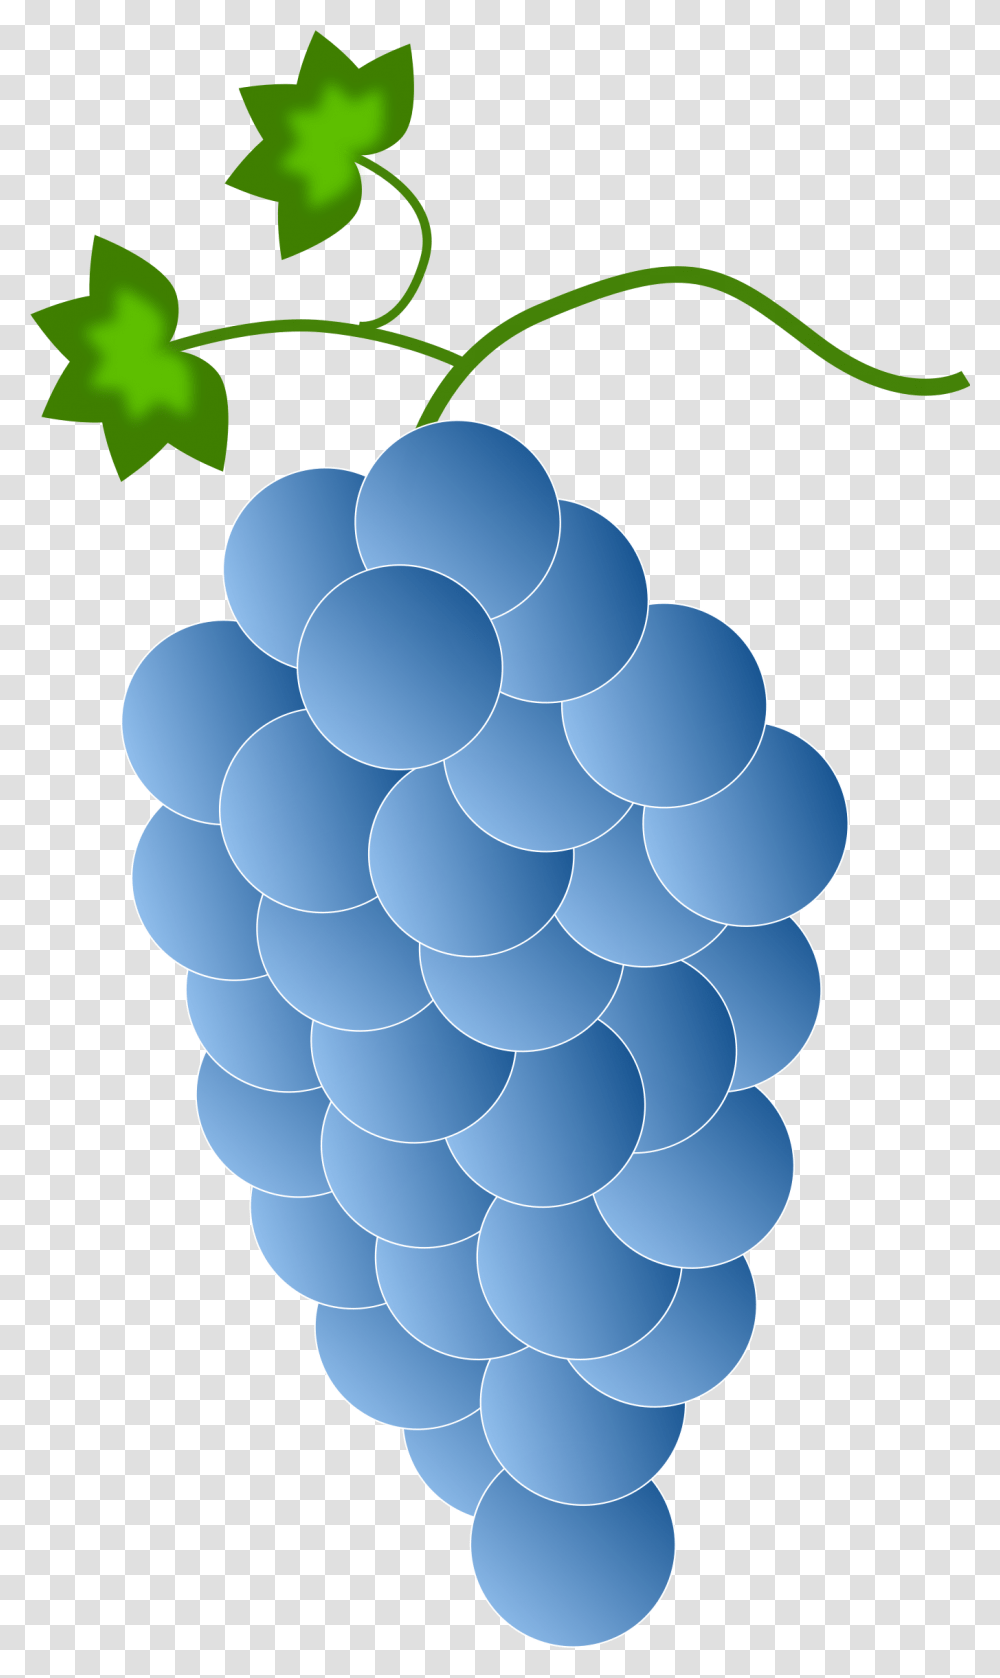 Blue Grapes Clip Arts Blue Grapes Clipart, Plant, Fruit, Food Transparent Png